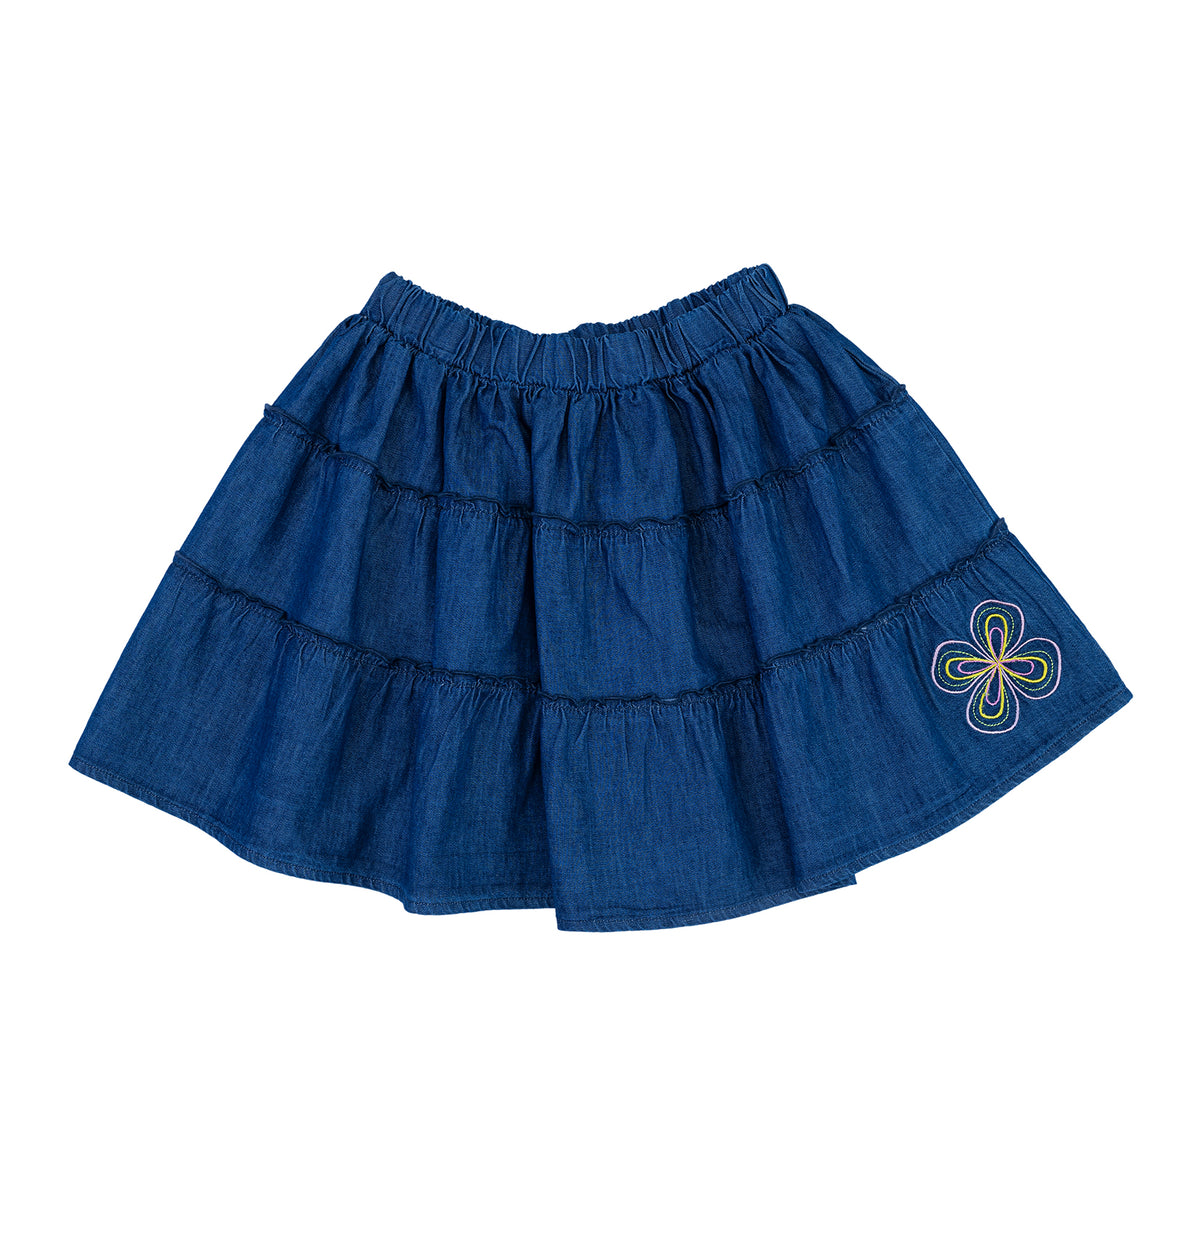 Girl fleurie patterned short skirt by Pompelo